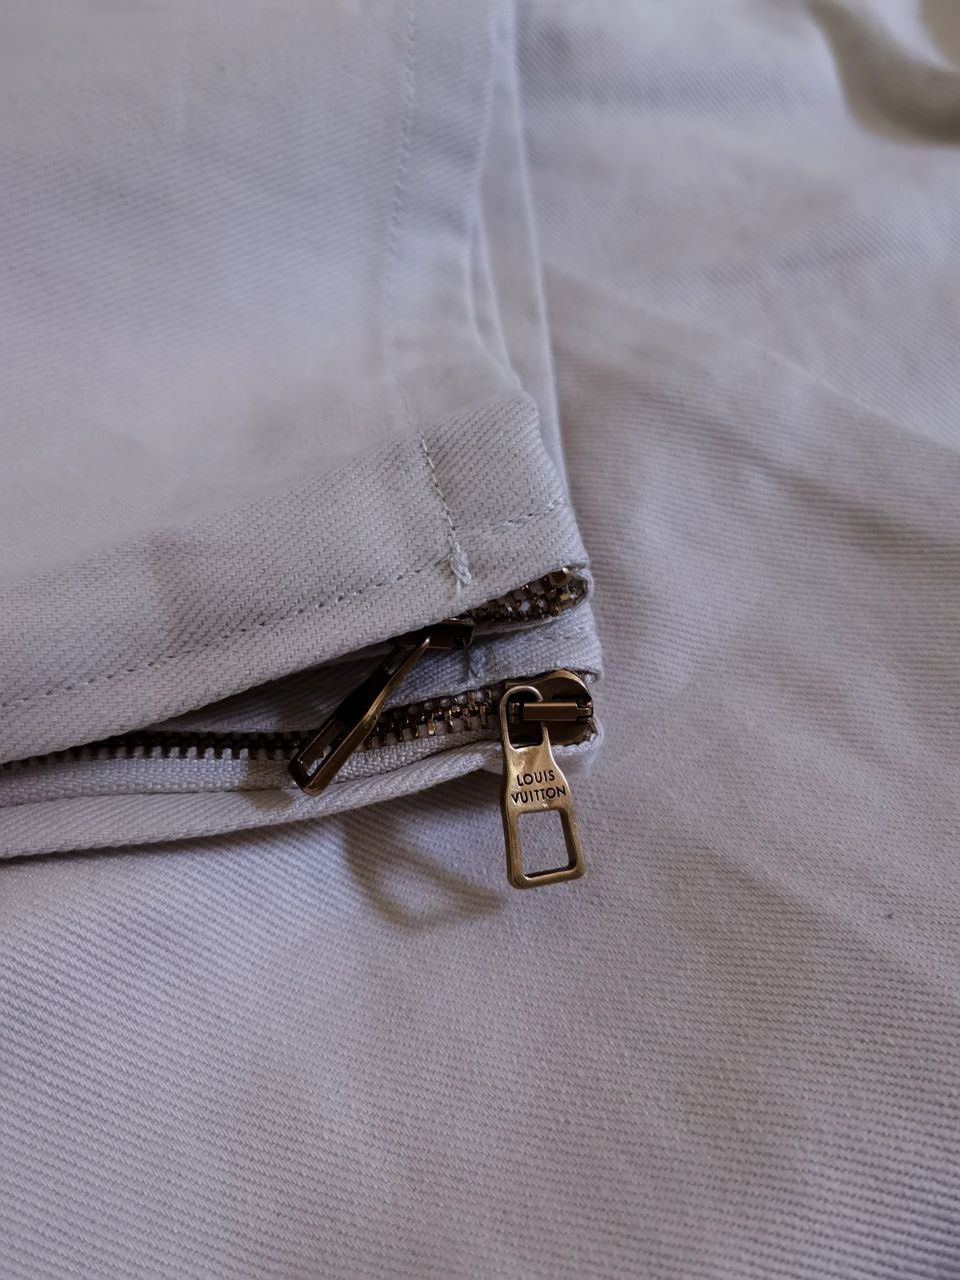 Louis Vuitton Monogram Workwear Denim Carpenter Pants, White, 34